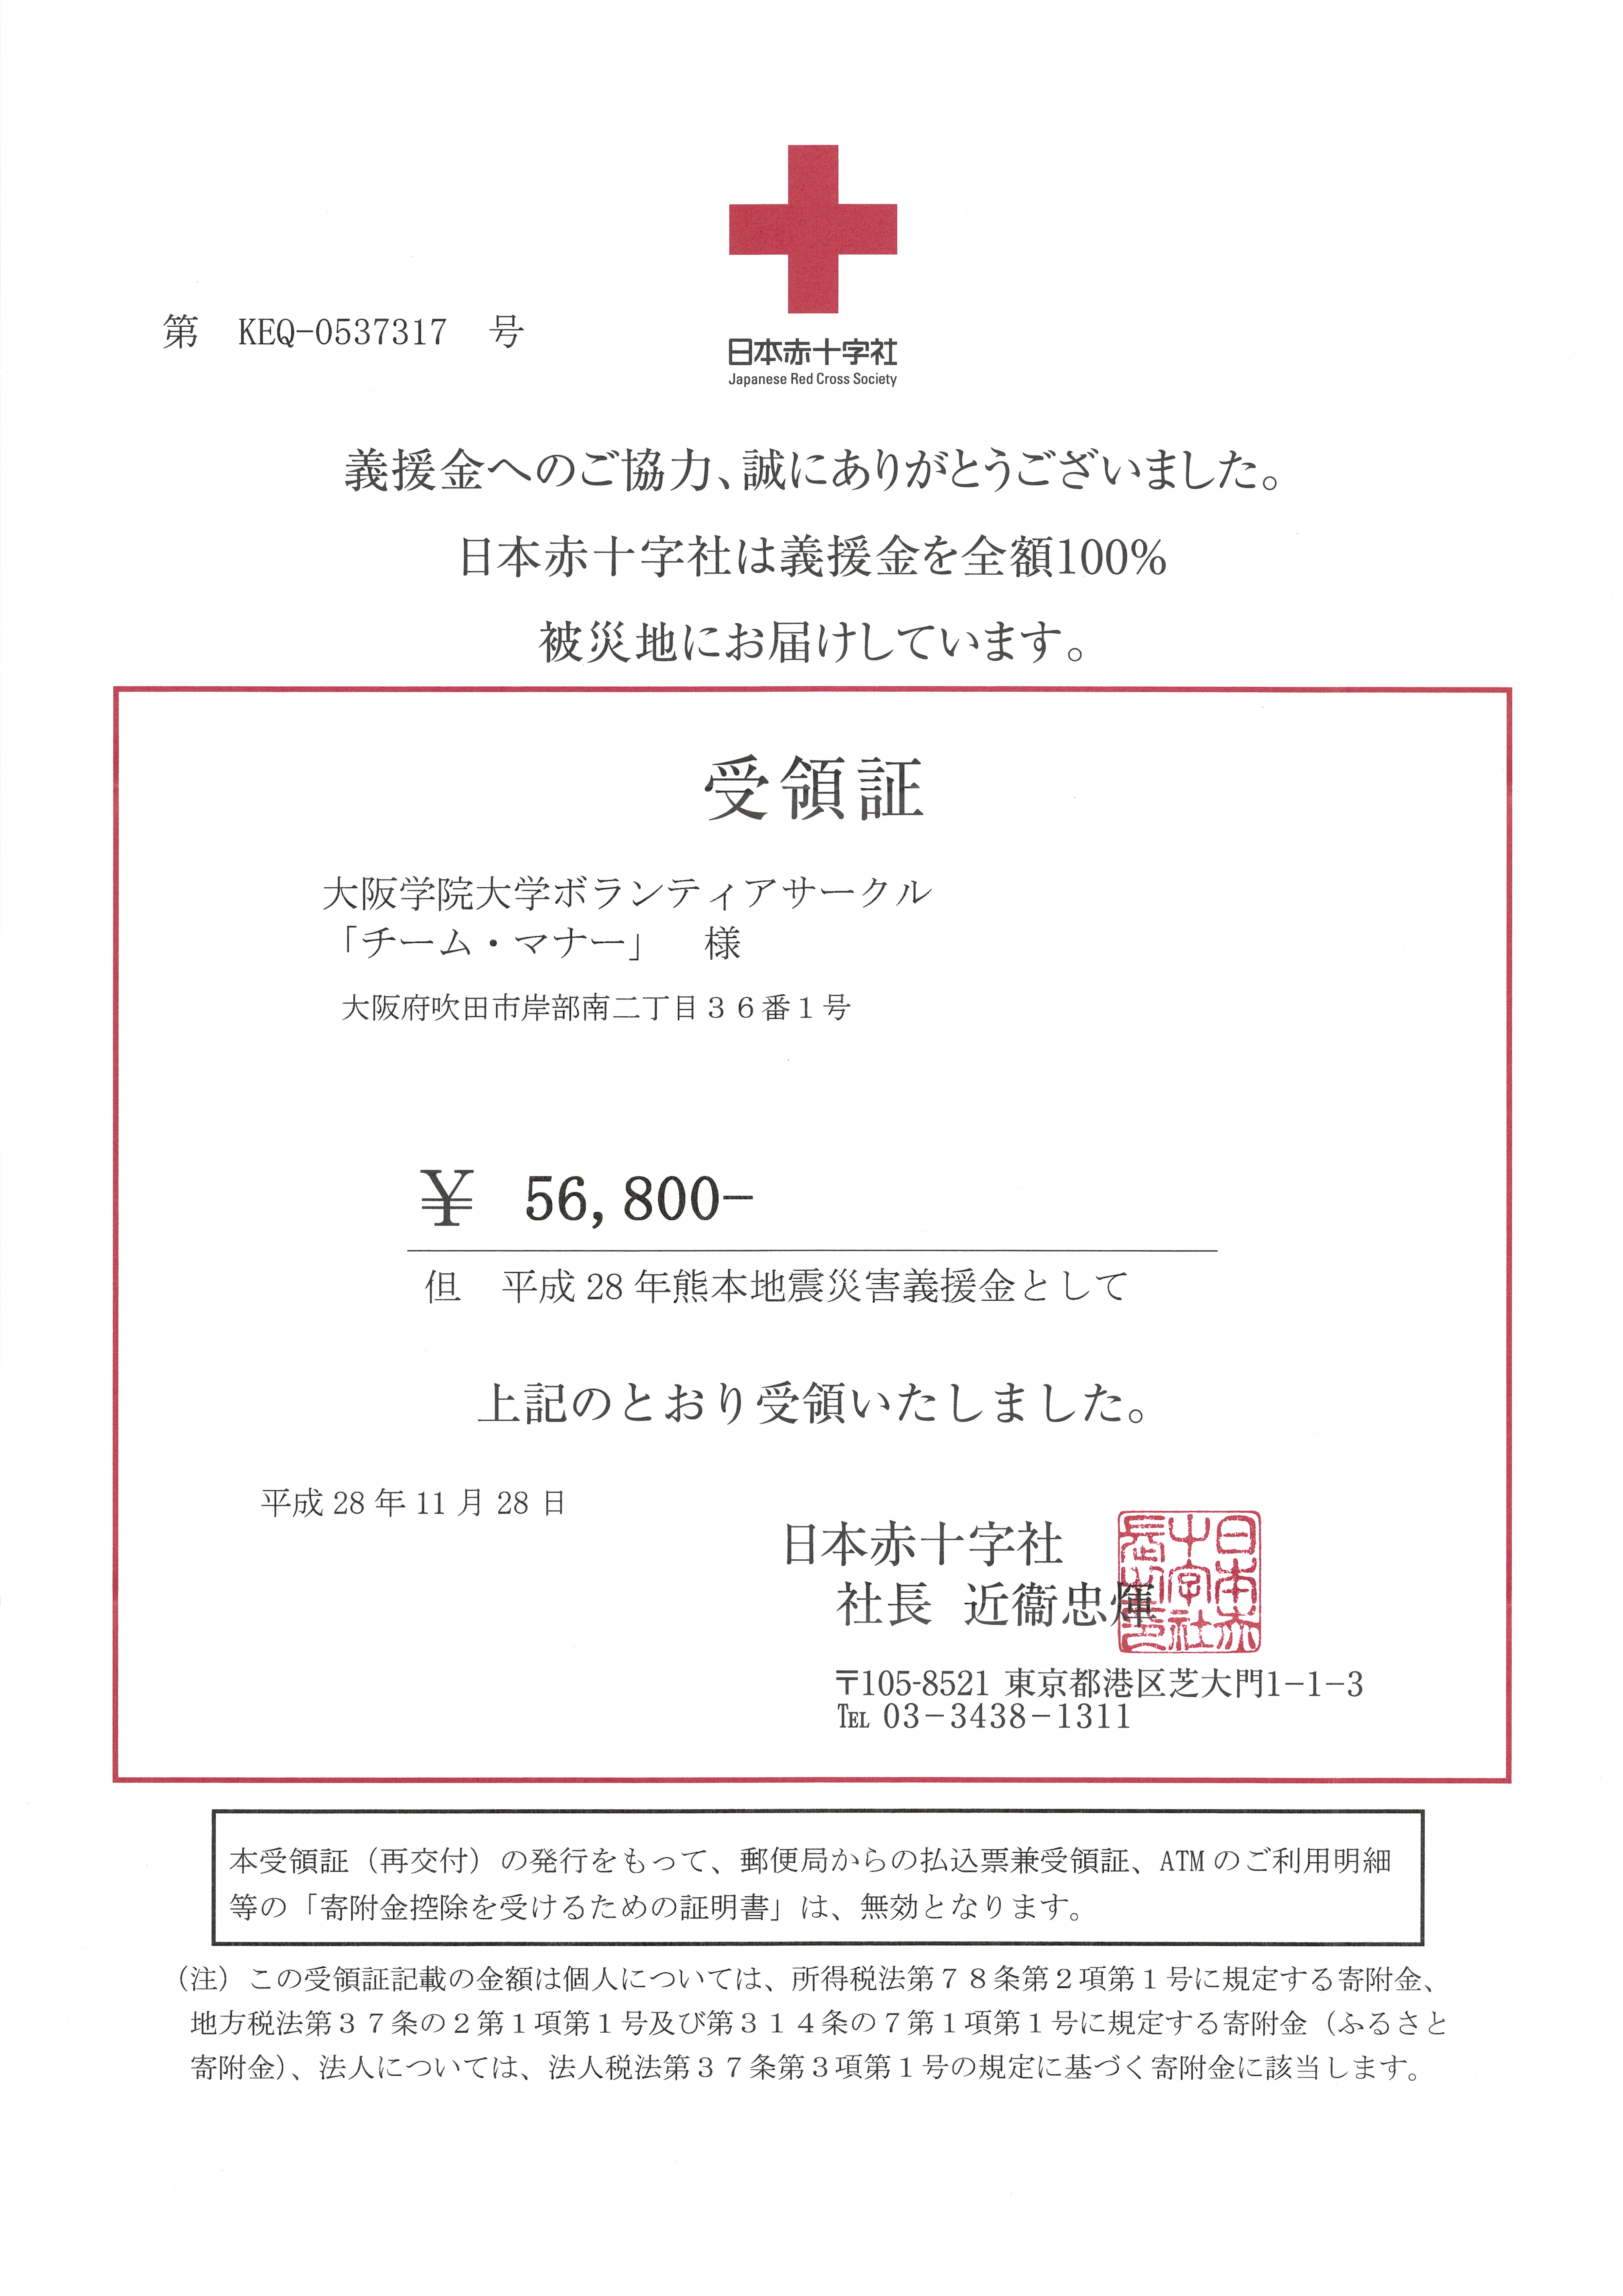 日本赤十字社「平成28年熊本地震災害義援金」受領書